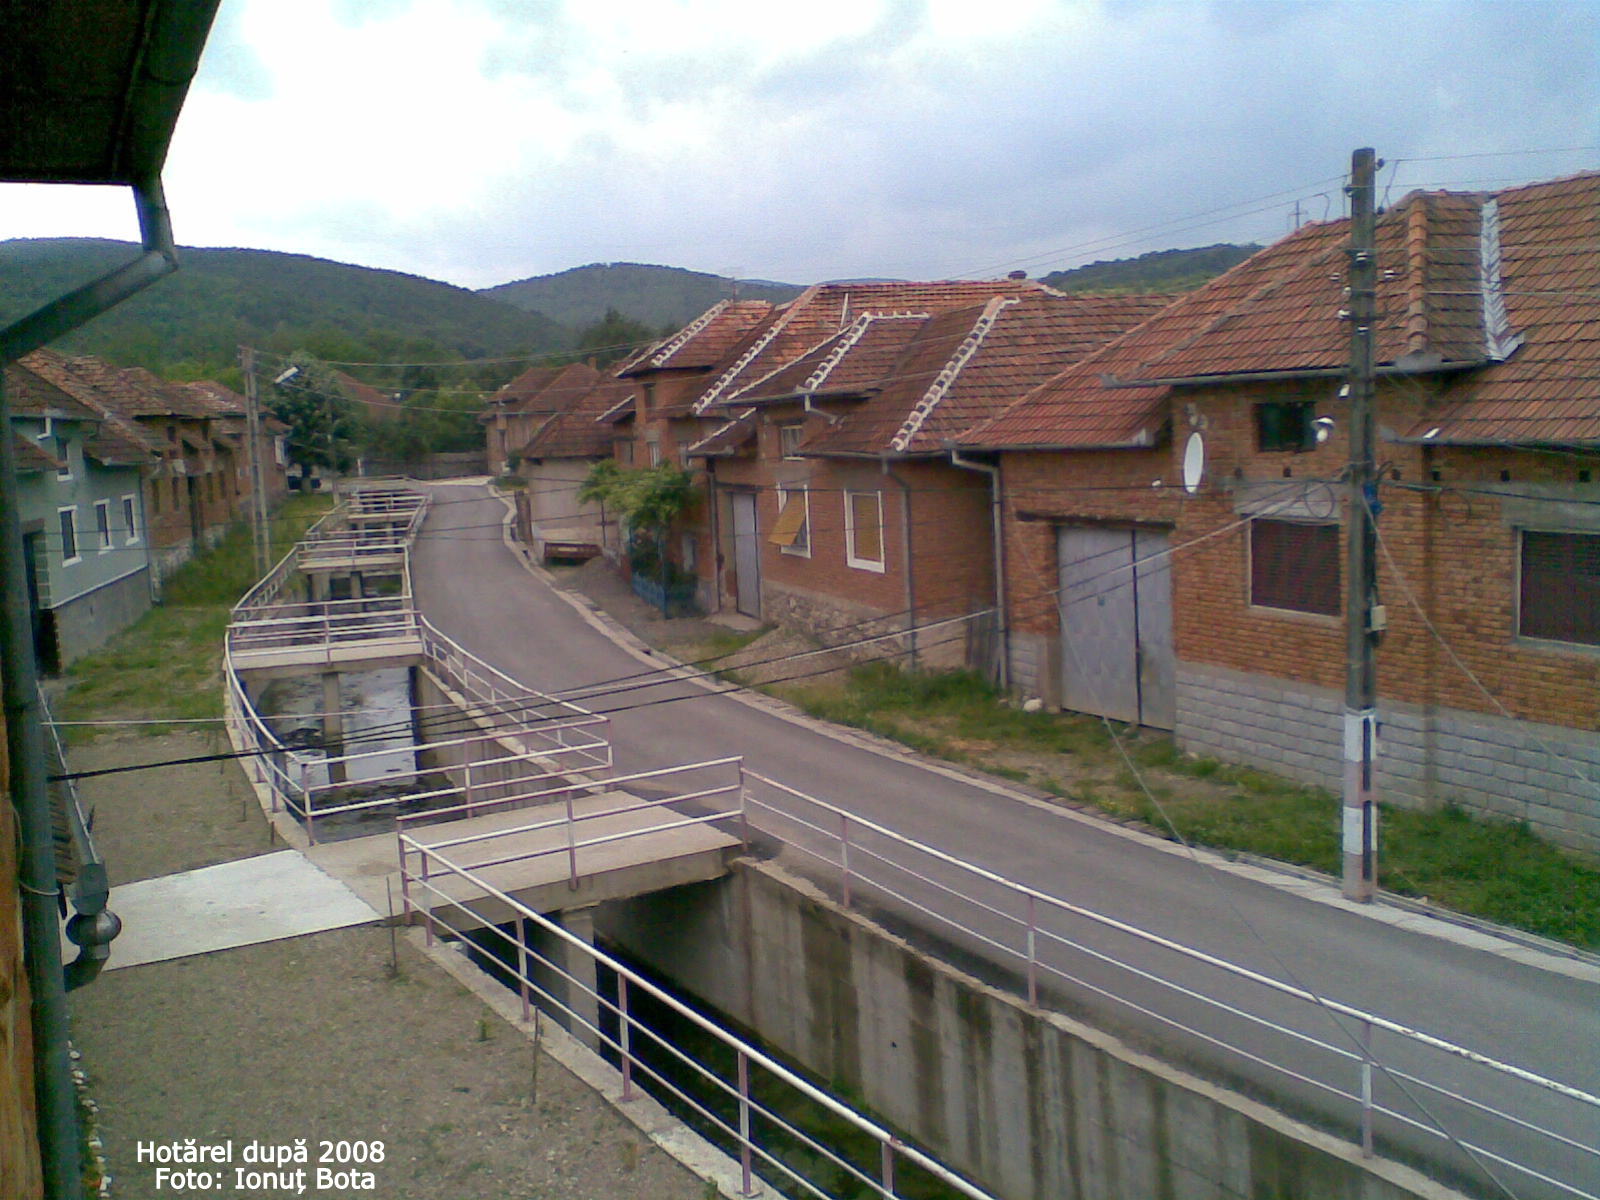 Hotarel, Bihor, Romania dupa 2008 ; satul Hotarel comuna Lunca judetul Bihor Romania